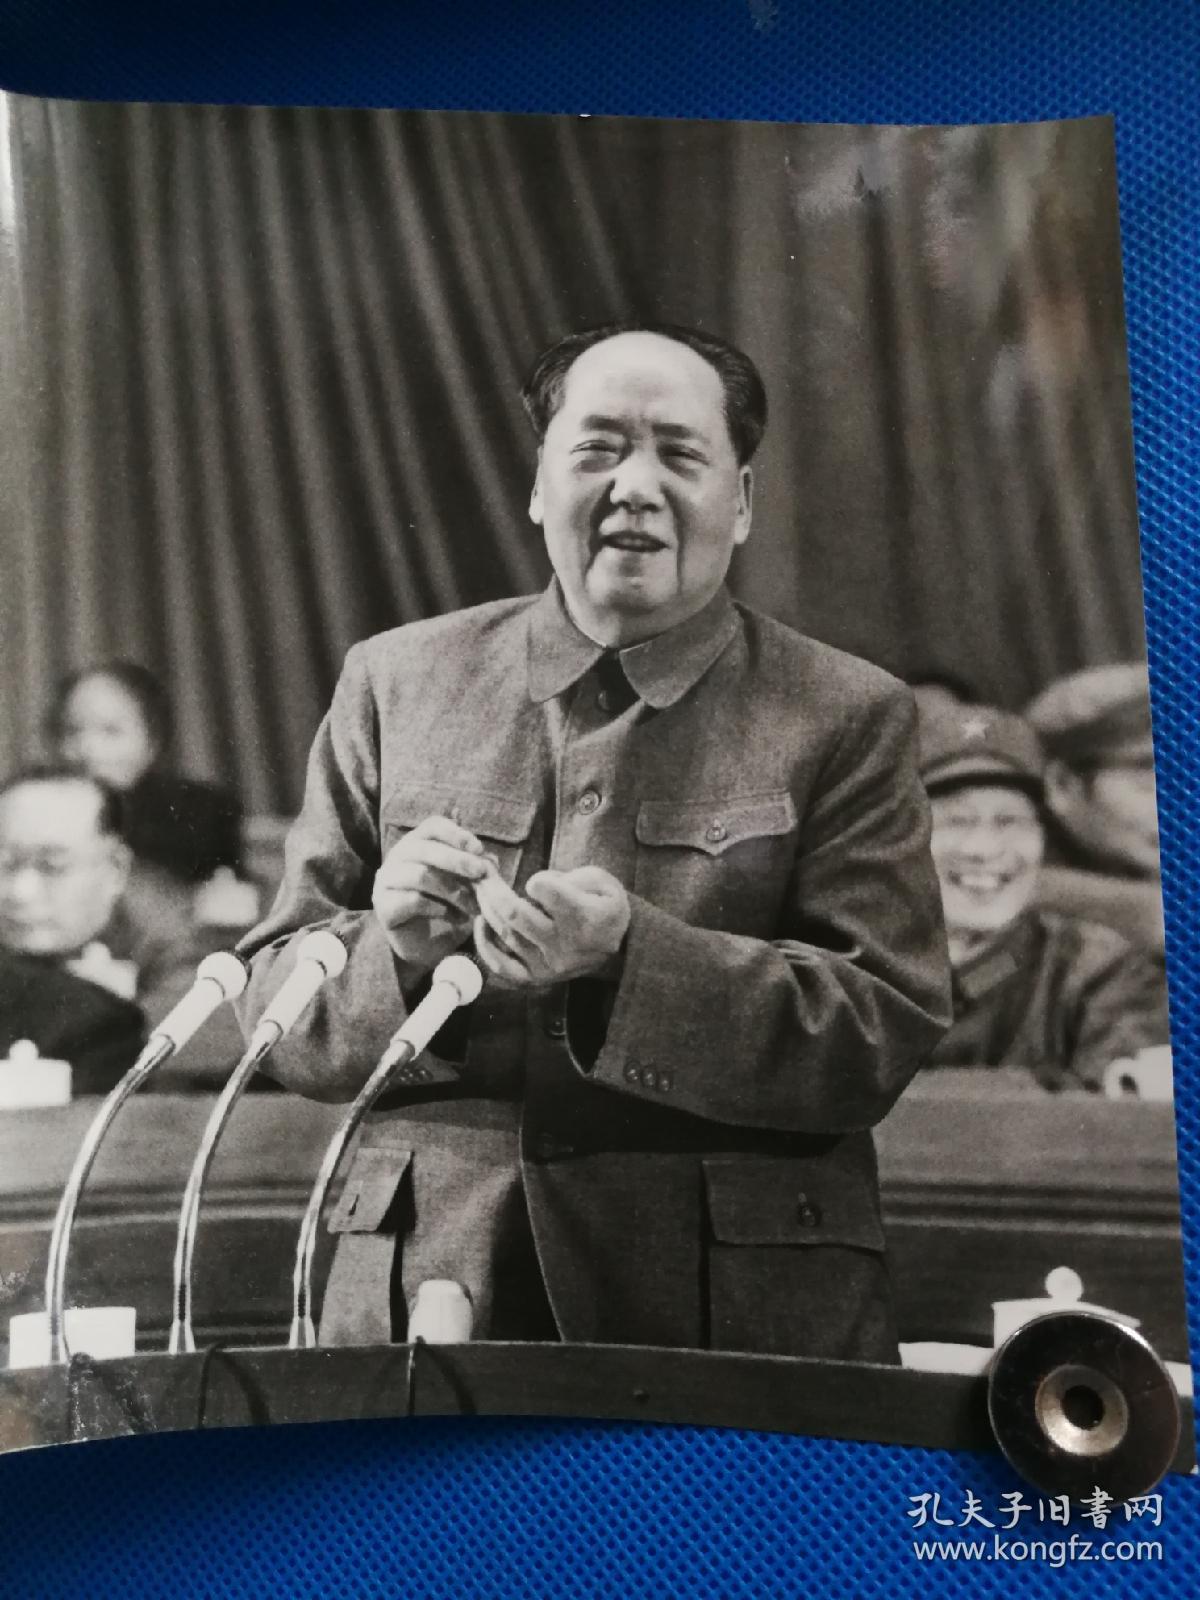 及文革期间毛泽东大中幅照片10张,拍品清晰度